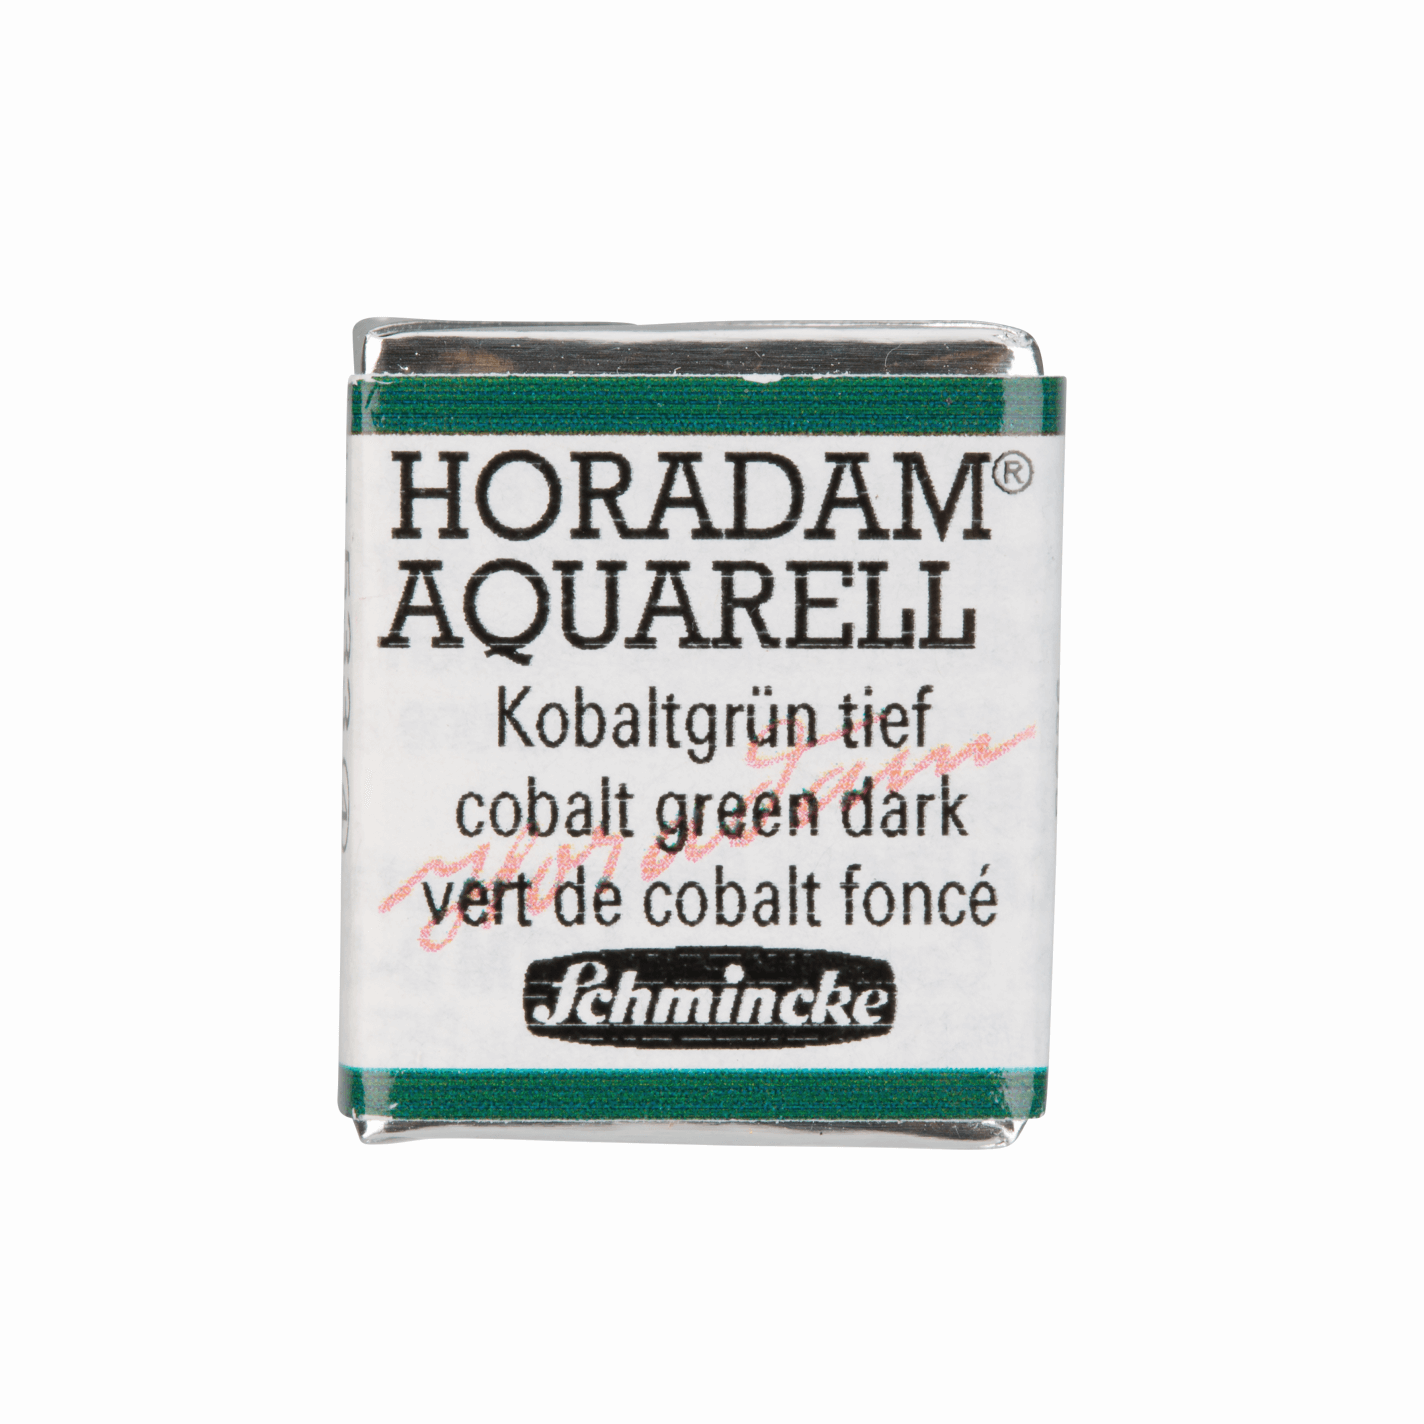 Schmincke Horadam Aquarell pans 1/2 pan Cobalt Green Dark